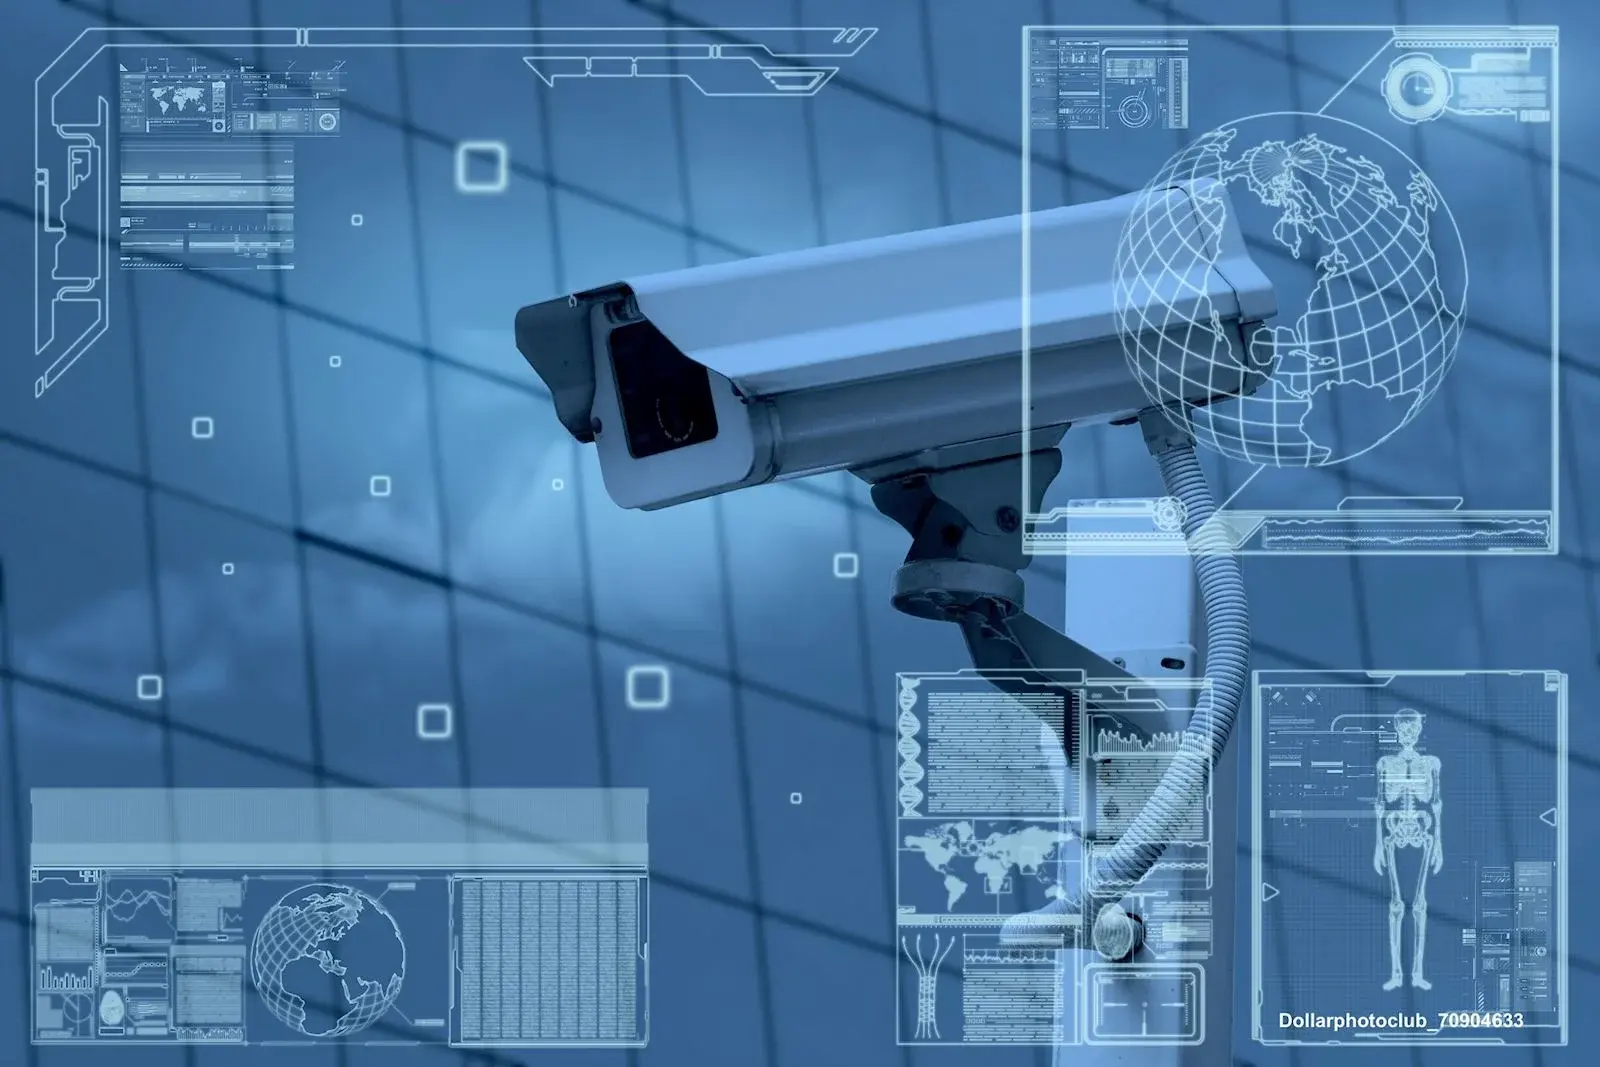 HỆ THỐNG CAMERA GIÁM SÁT CCTV: Người bảo vệ vô hình cho sự an toàn của bạn